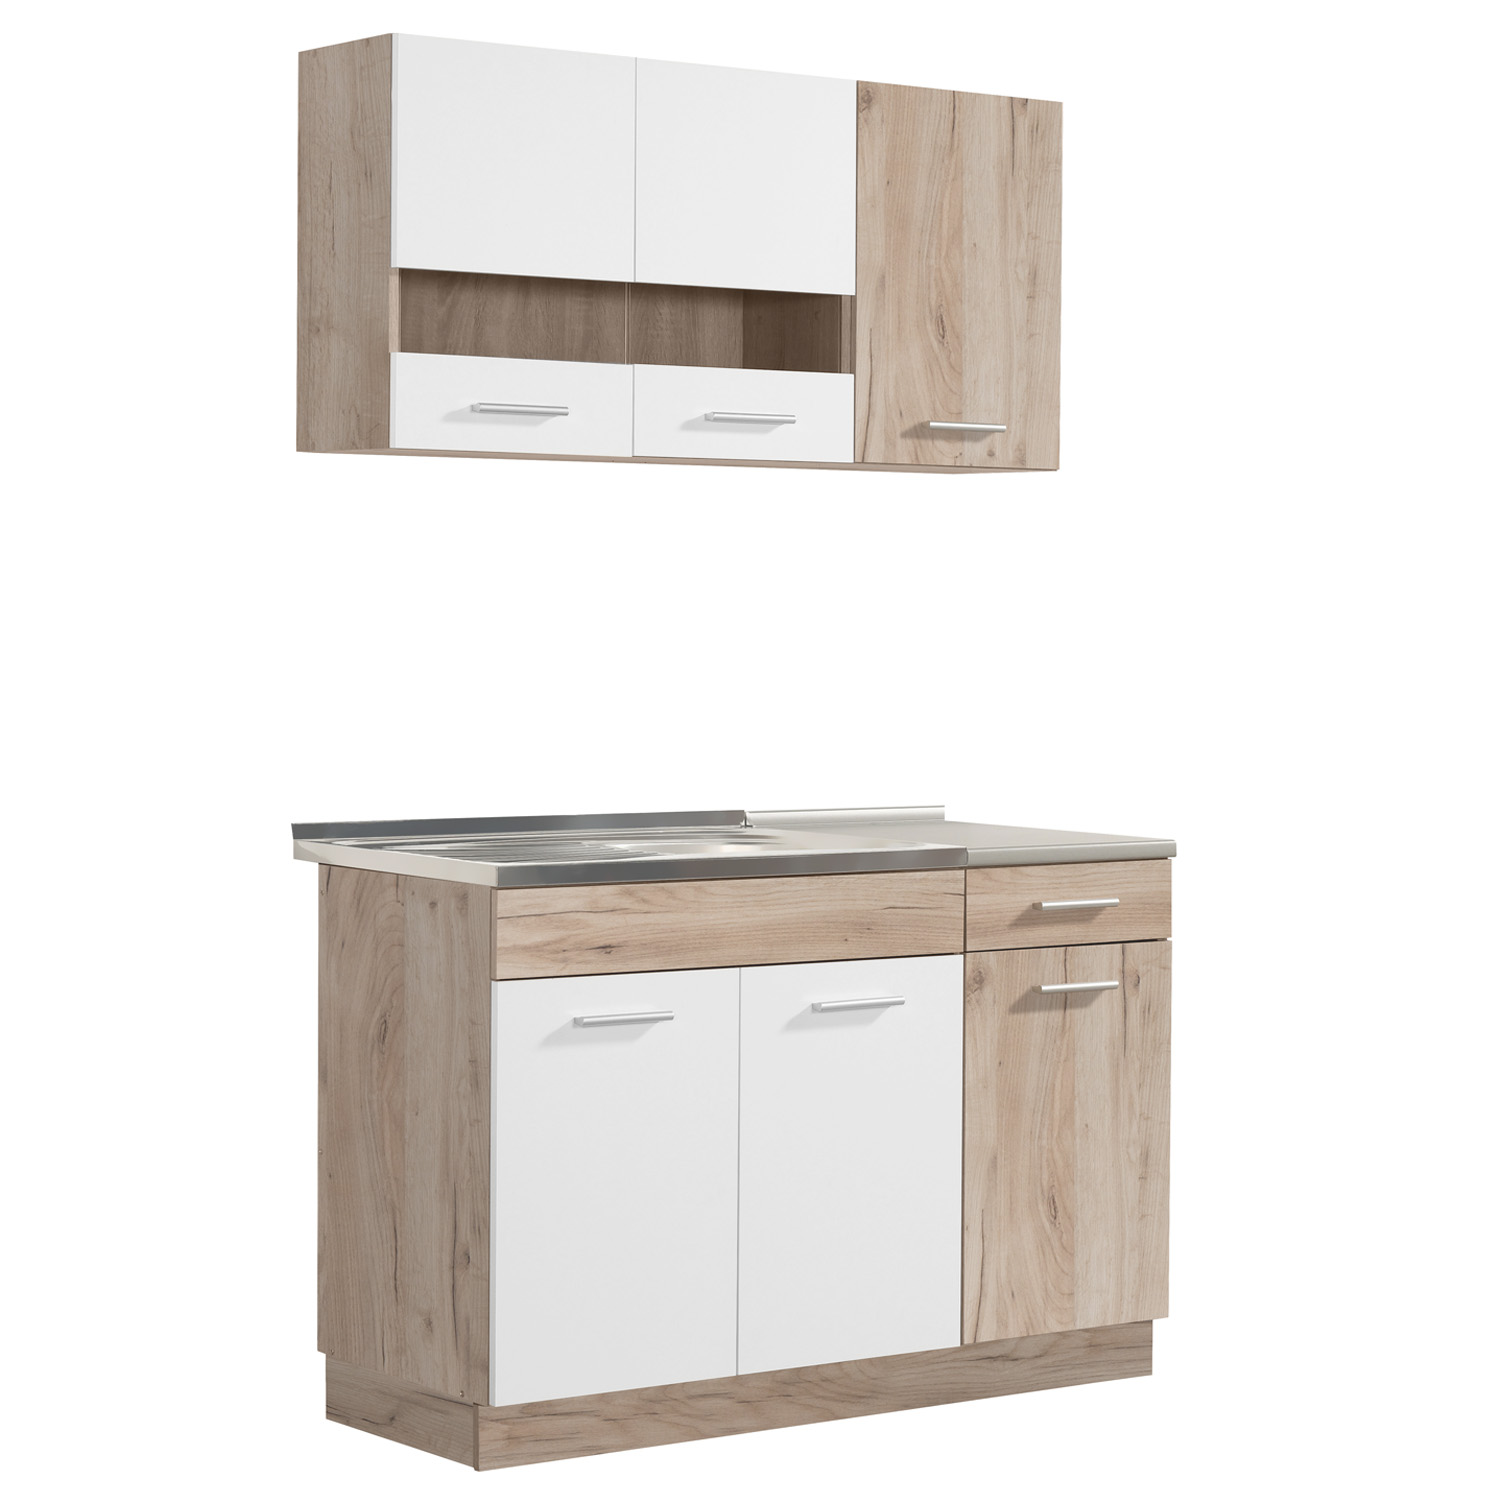 Modern Kitchen White Wood Kitchen Island Kitchen Cabinets Kitchen Units 120 cm Kitchen Cupboards